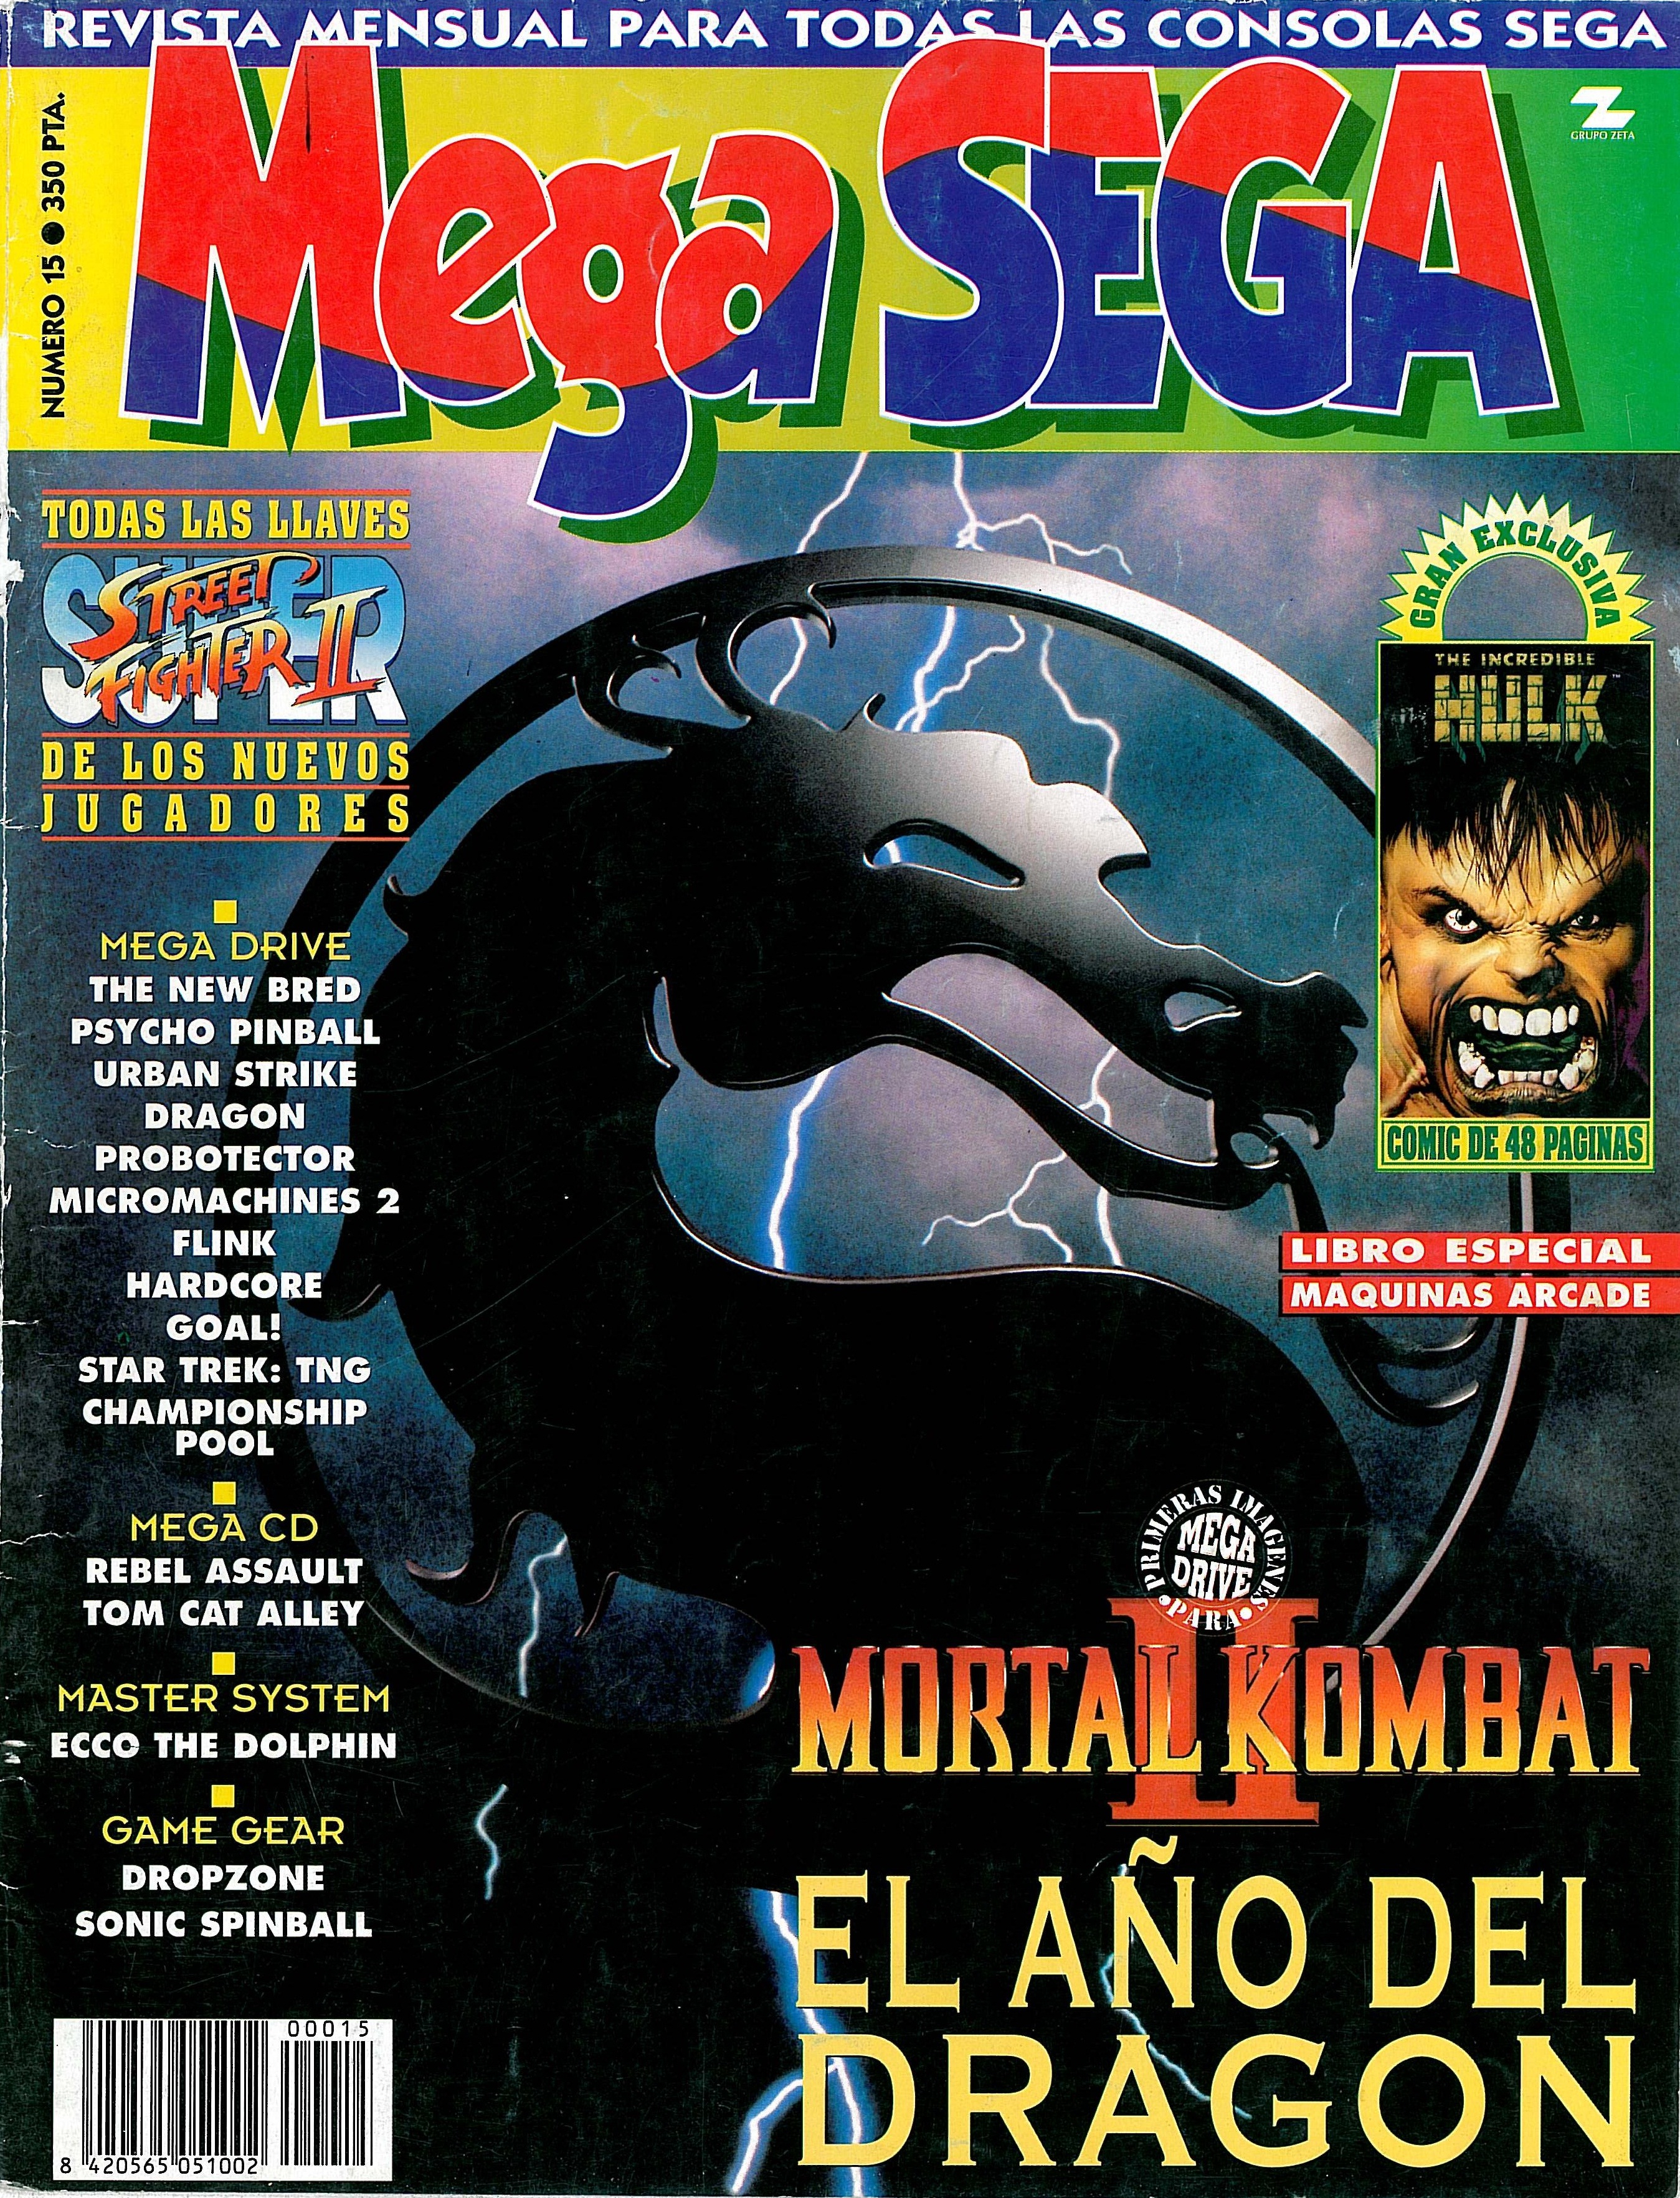 MegaSega 15 cover.jpg